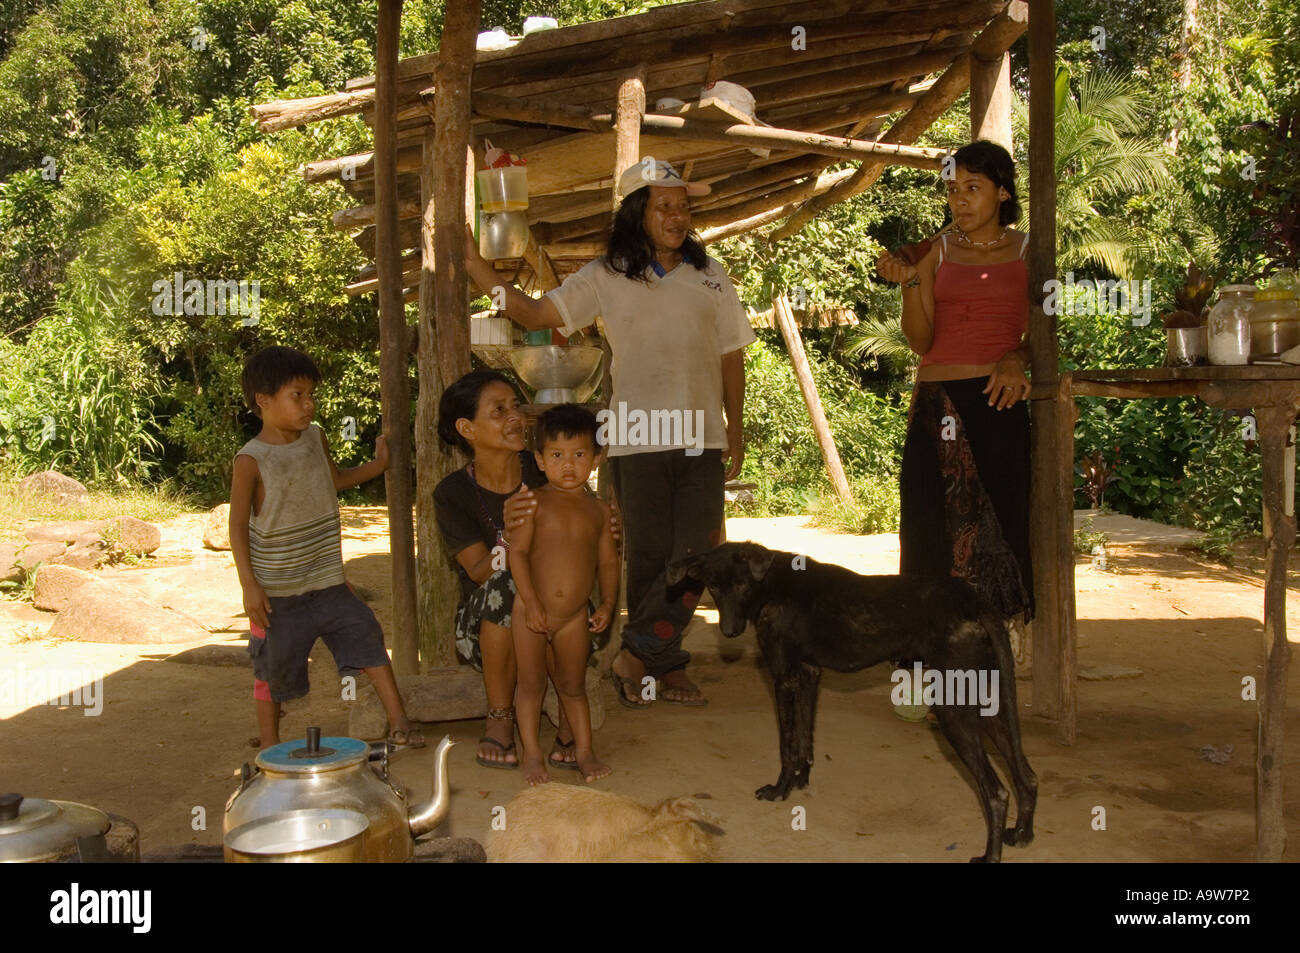 Famille d'Indiens Guaranis dans le village de Boa Vista dans la forêt tropicale atlantique Etat de Sao Paulo Brésil Banque D'Images